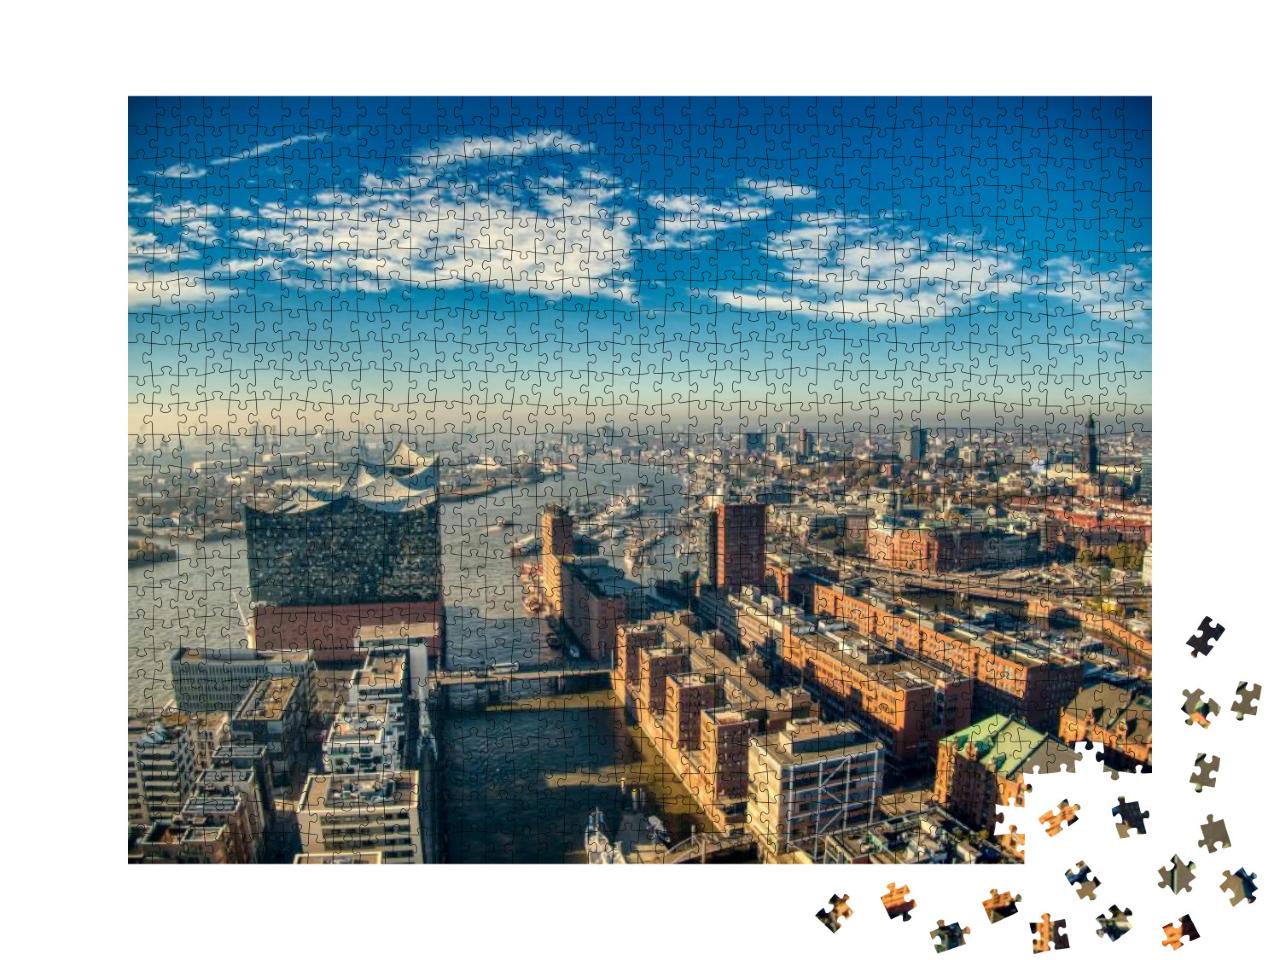 Elbphilharmonie Hamburg Aerial Harbor Elbe River... Jigsaw Puzzle with 1000 pieces